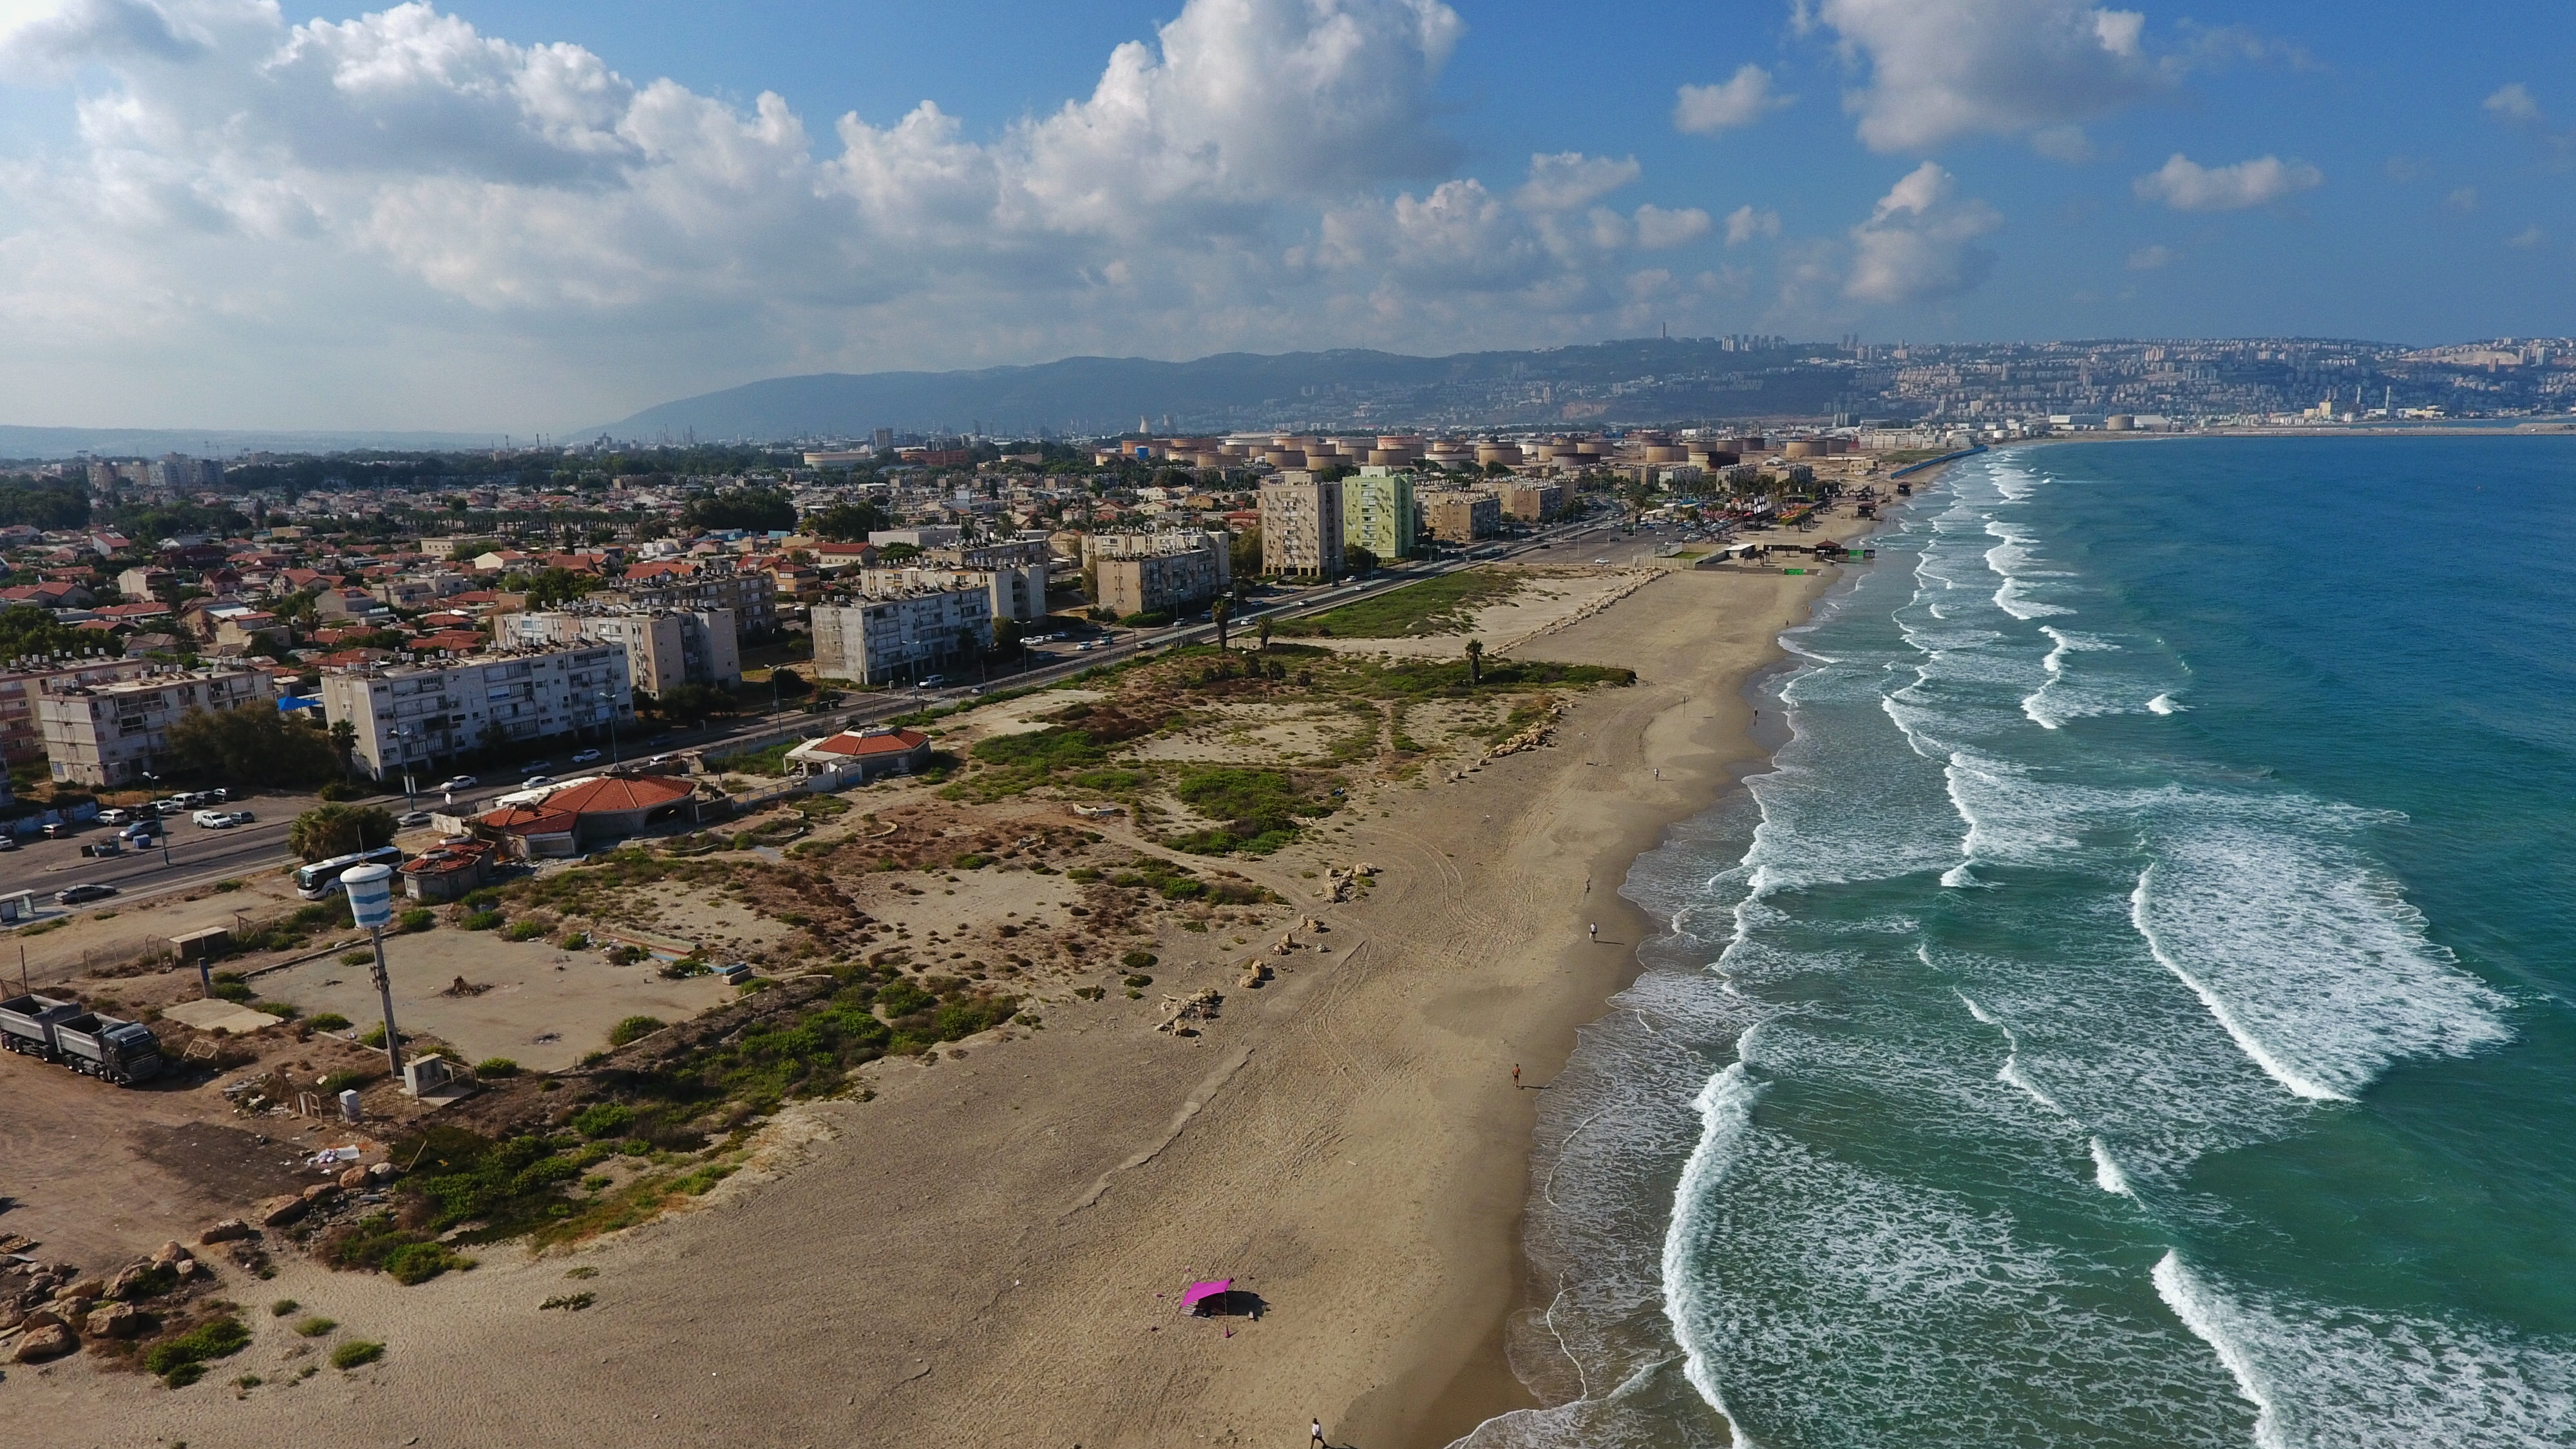 עיריית חיפה תחל בימים הקרובים במהלך לניקוי מתחם חוף "כאן" שבקריית-חיים